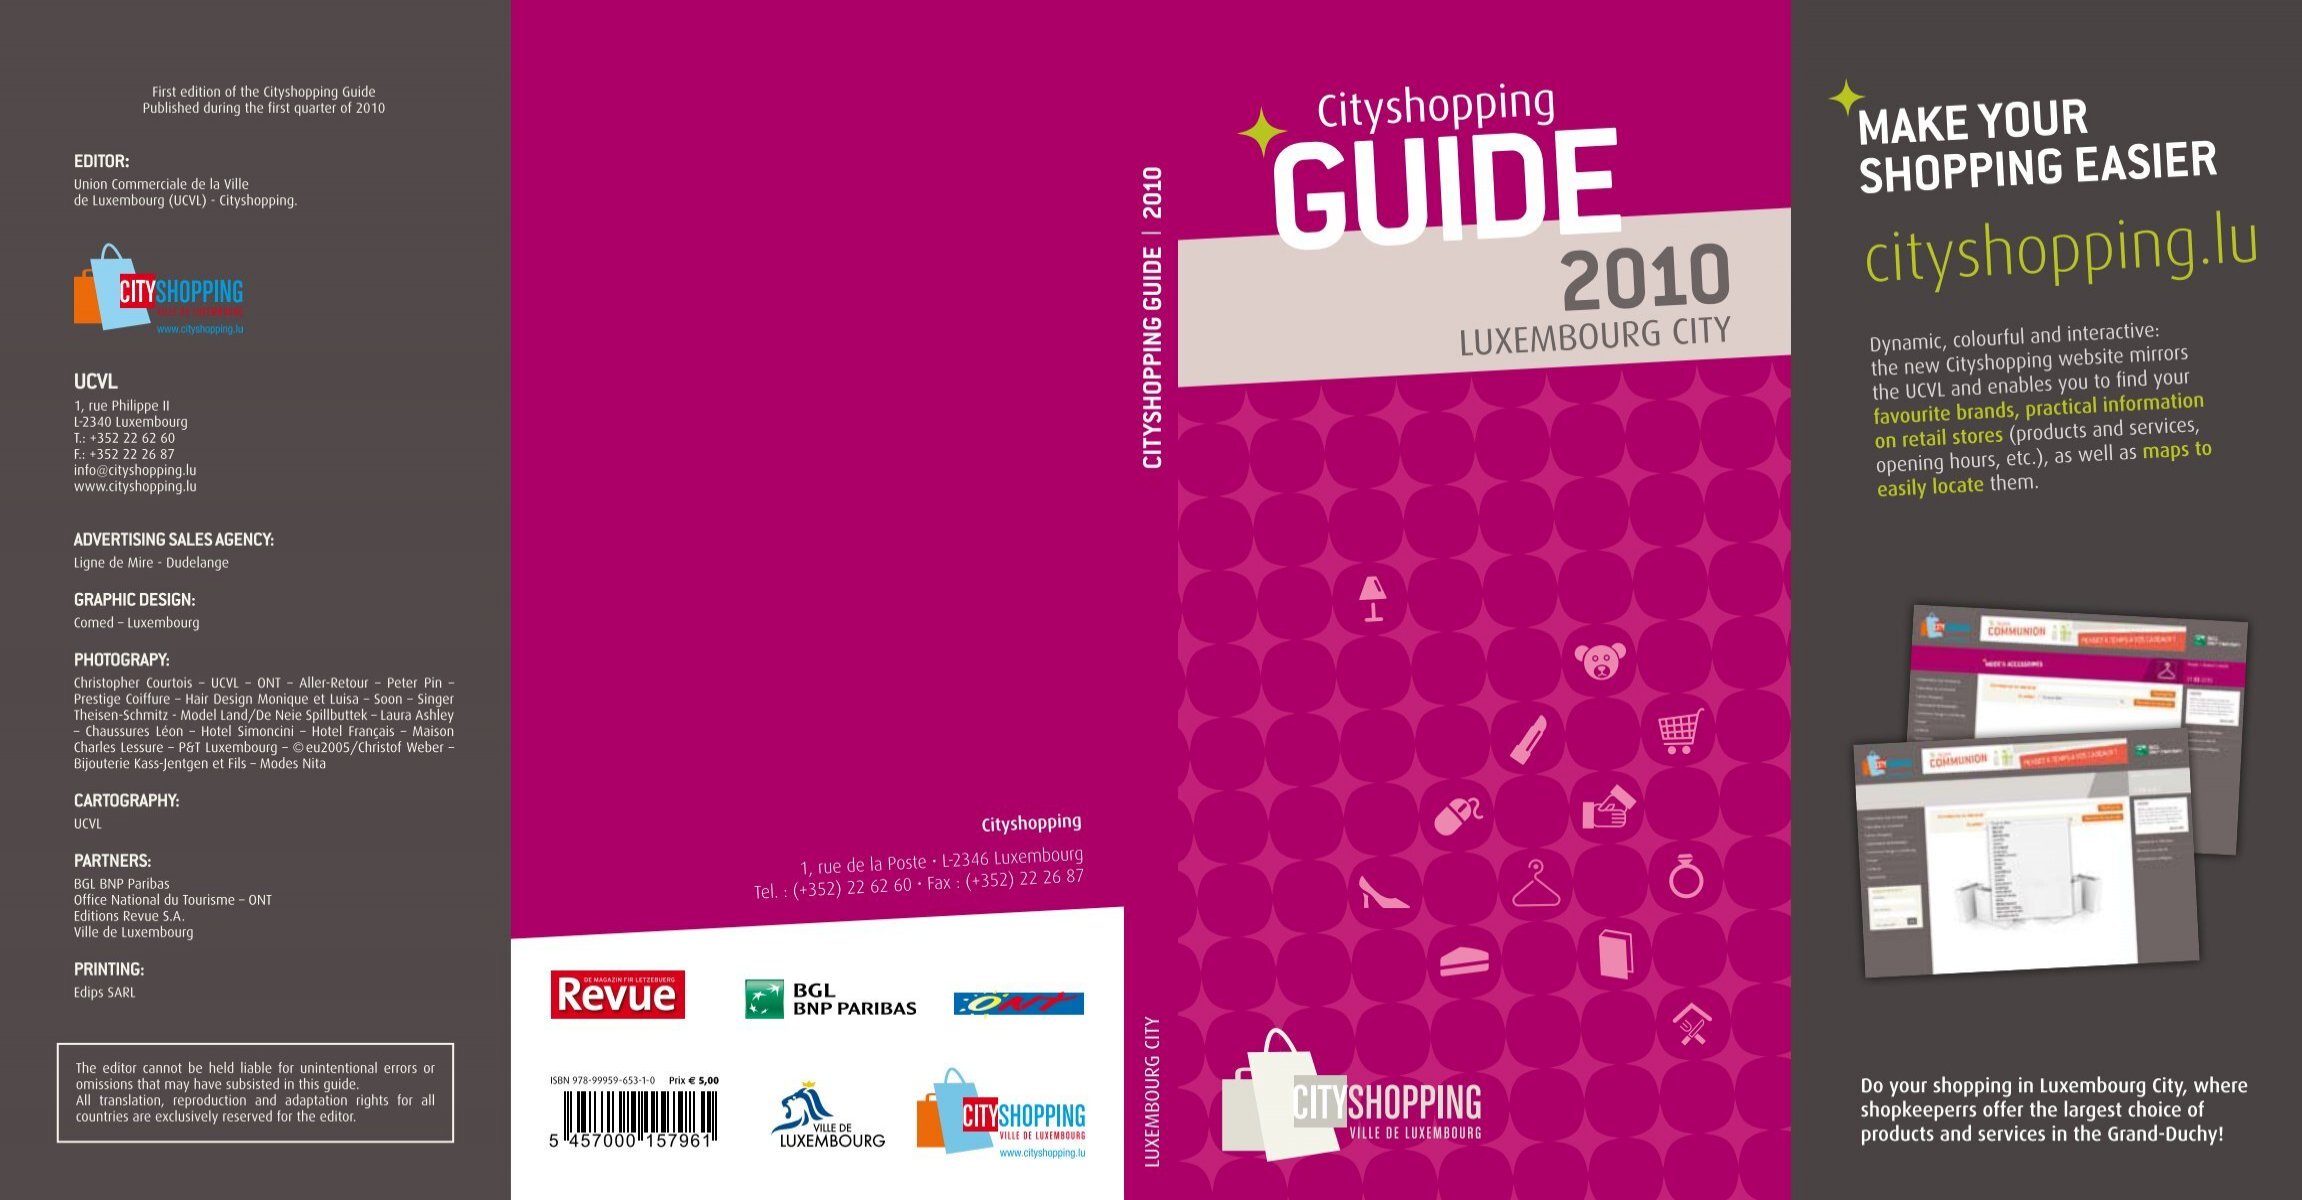 Guide 2010 - Cityshopping.lu